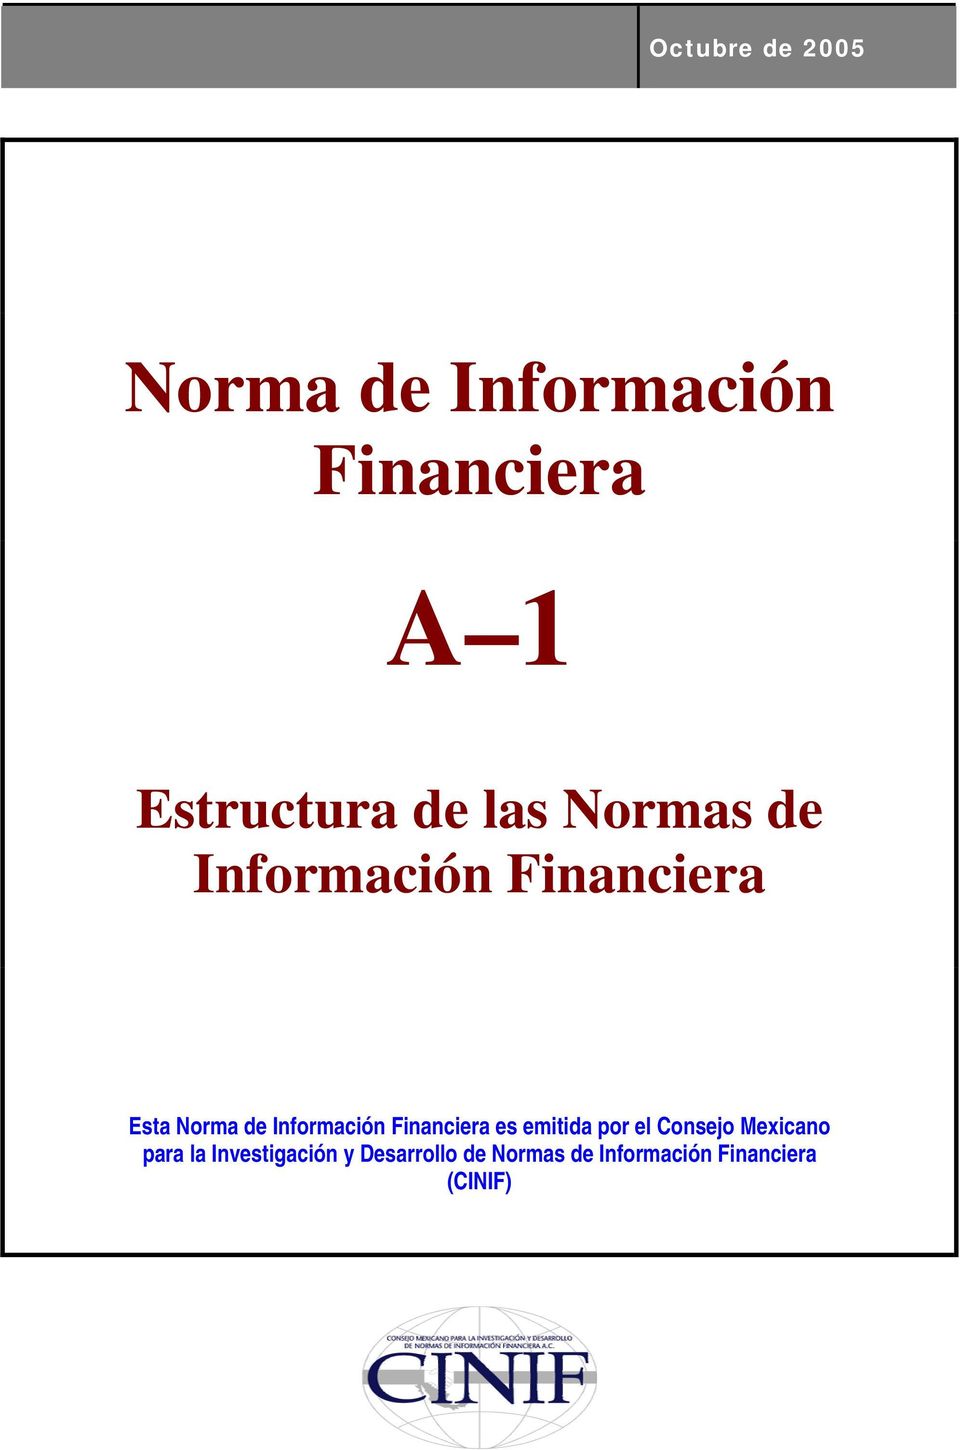 Información Financiera es emitida por el Consejo Mexicano para